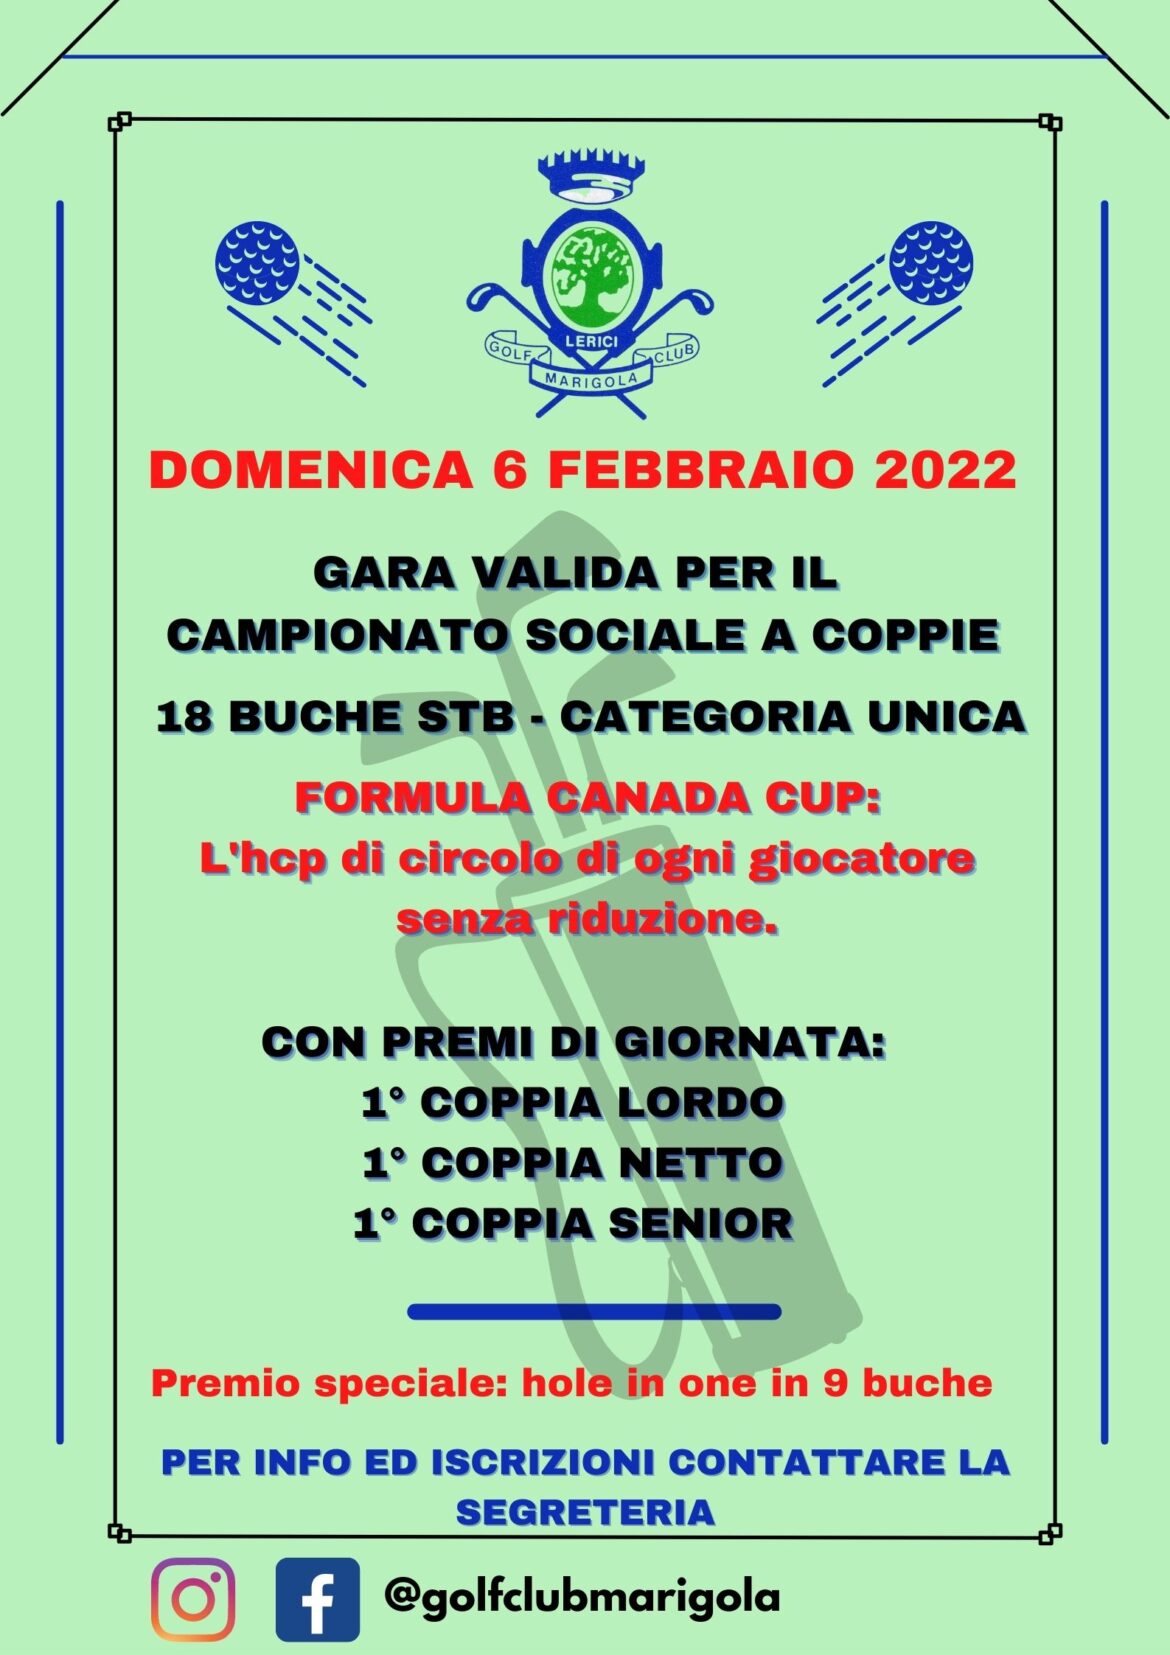 Campionato Sociale COPPIE 2022 – formula canada cup